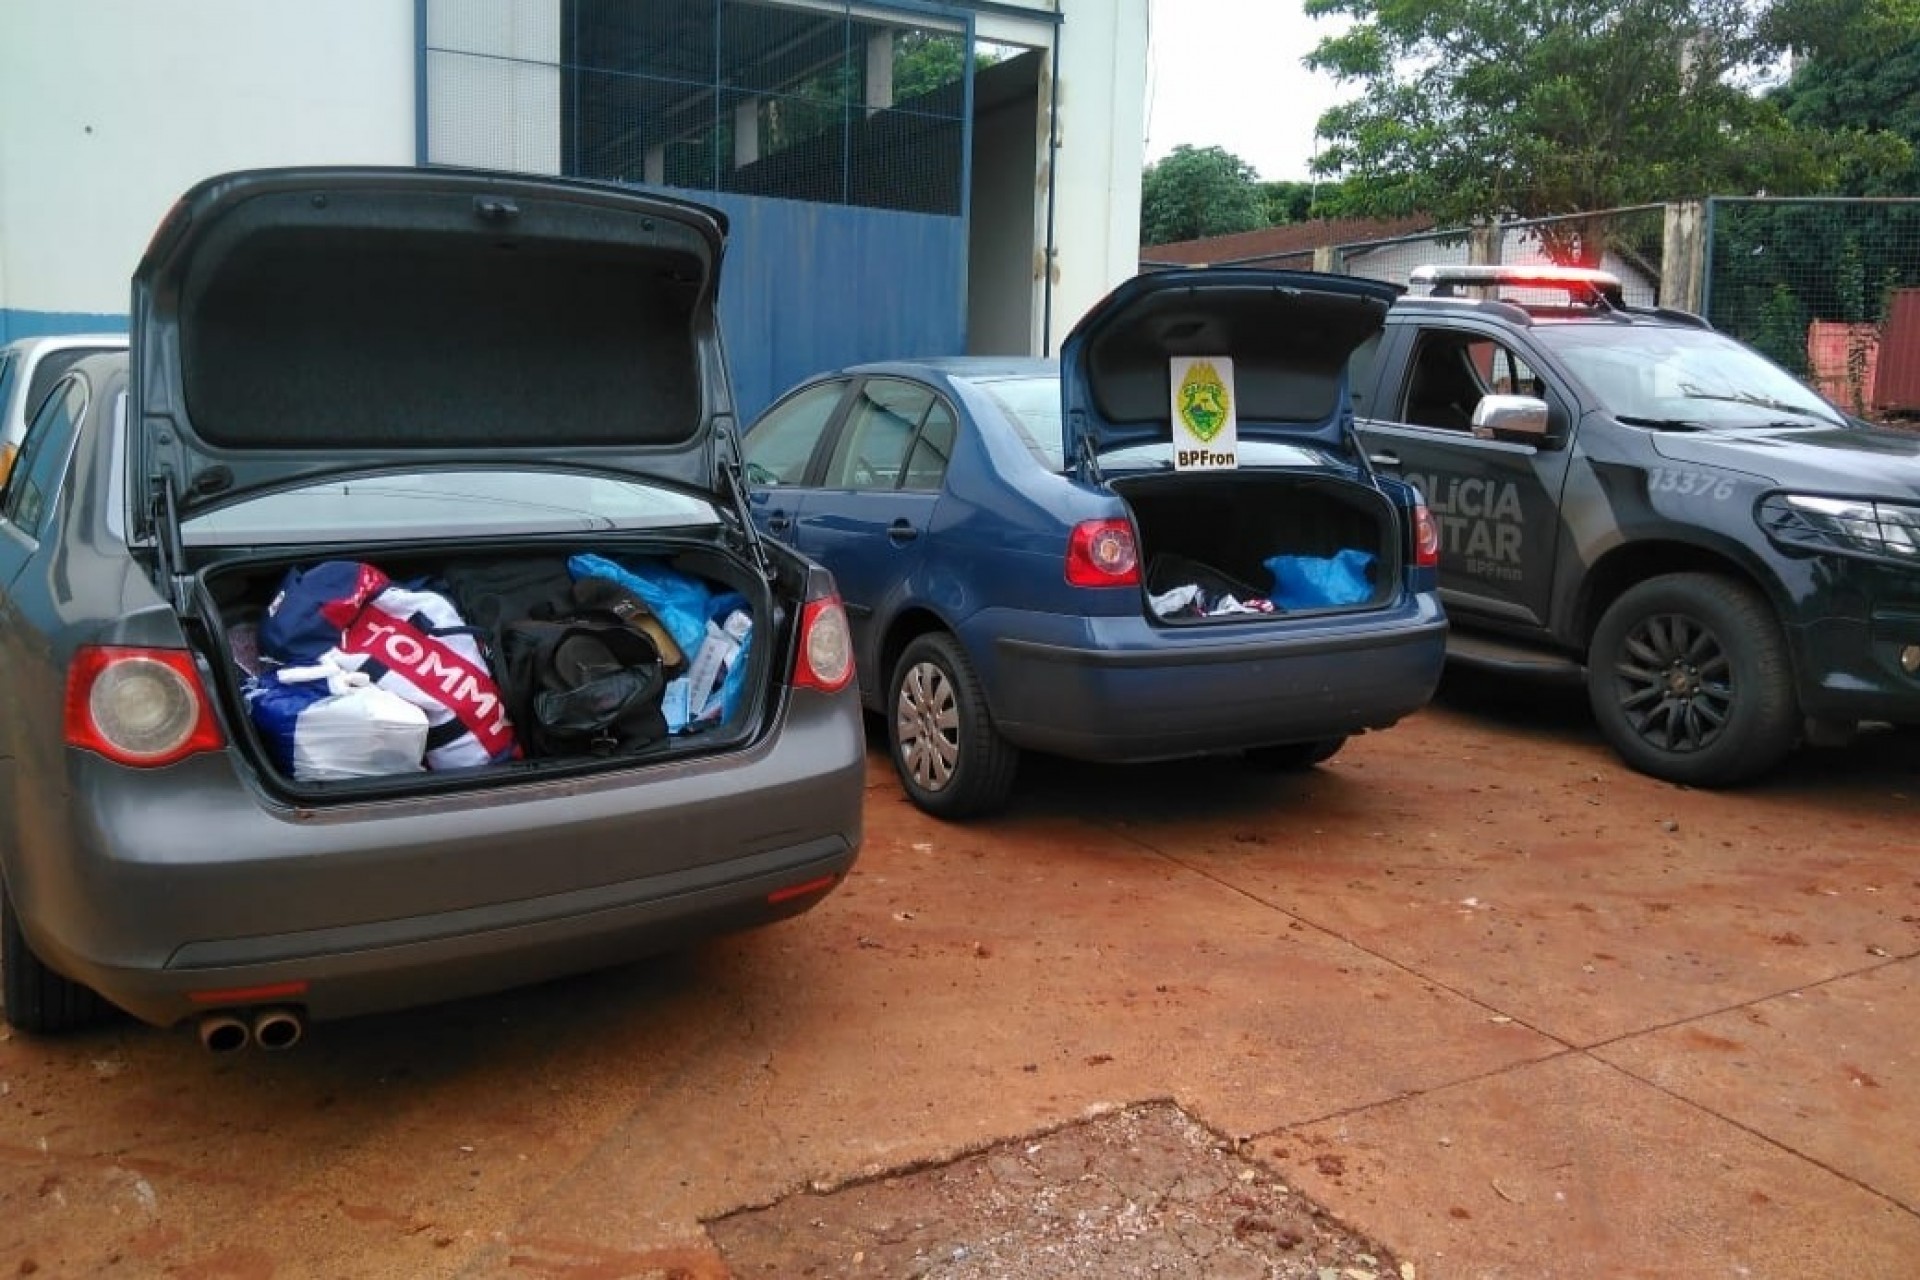 BPFron apreende dois veículos com contrabando na PR 495